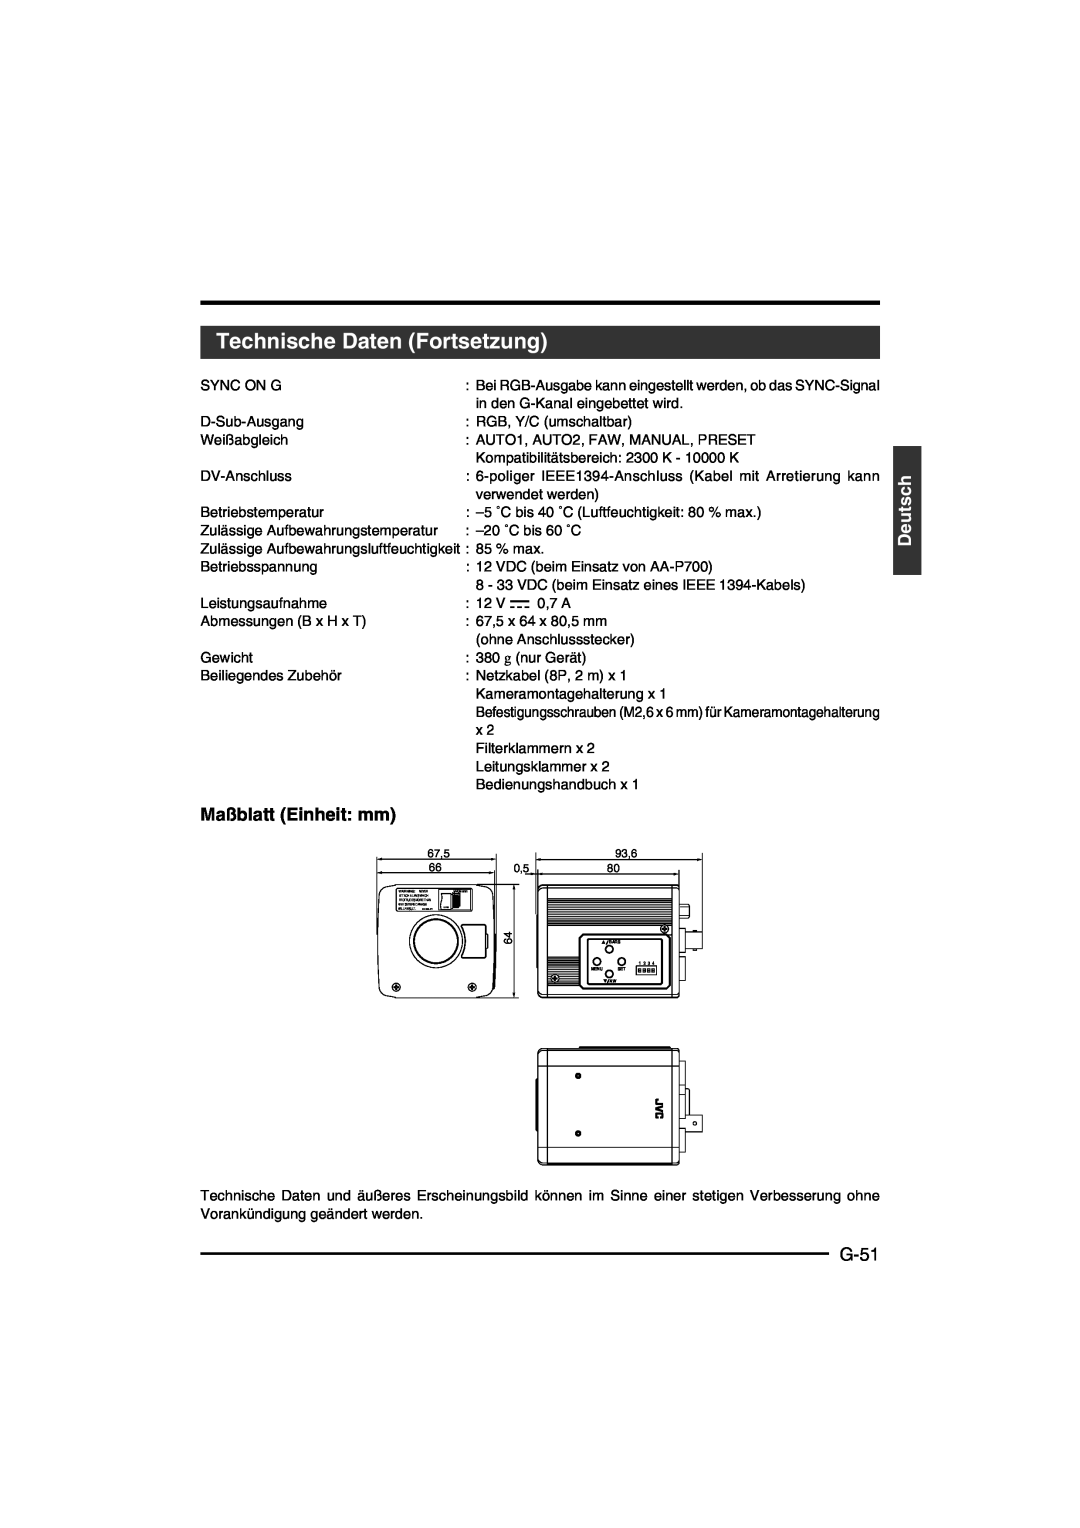 JVC KY-F550E instruction manual Technische Daten Fortsetzung, Maßblatt Einheit mm, G-51, Deutsch 